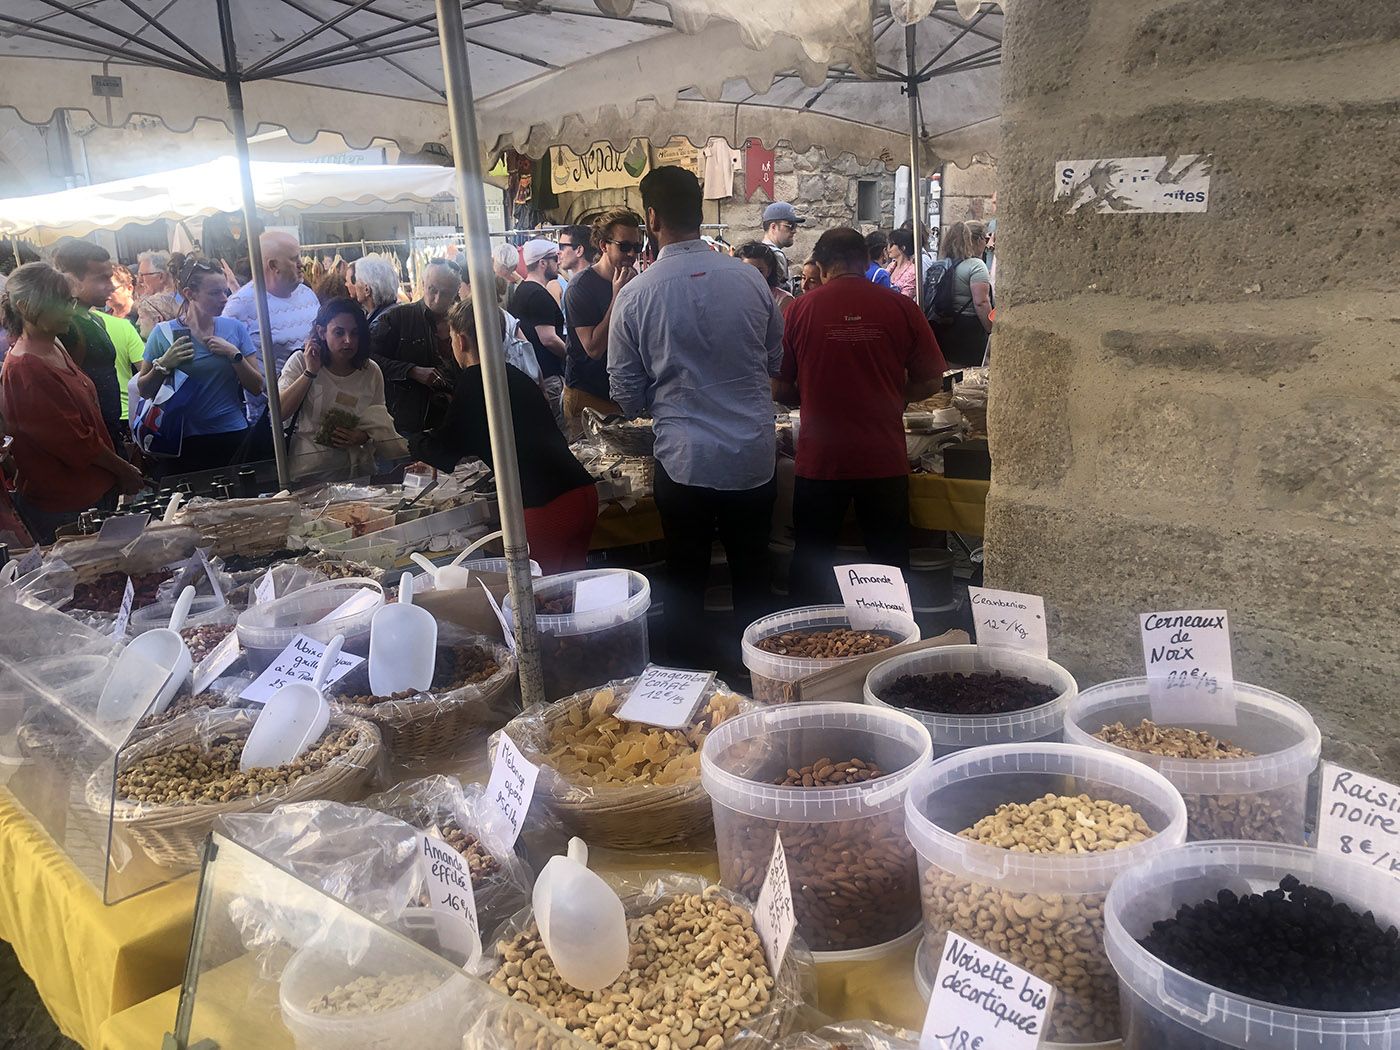 The village market of Les Vans